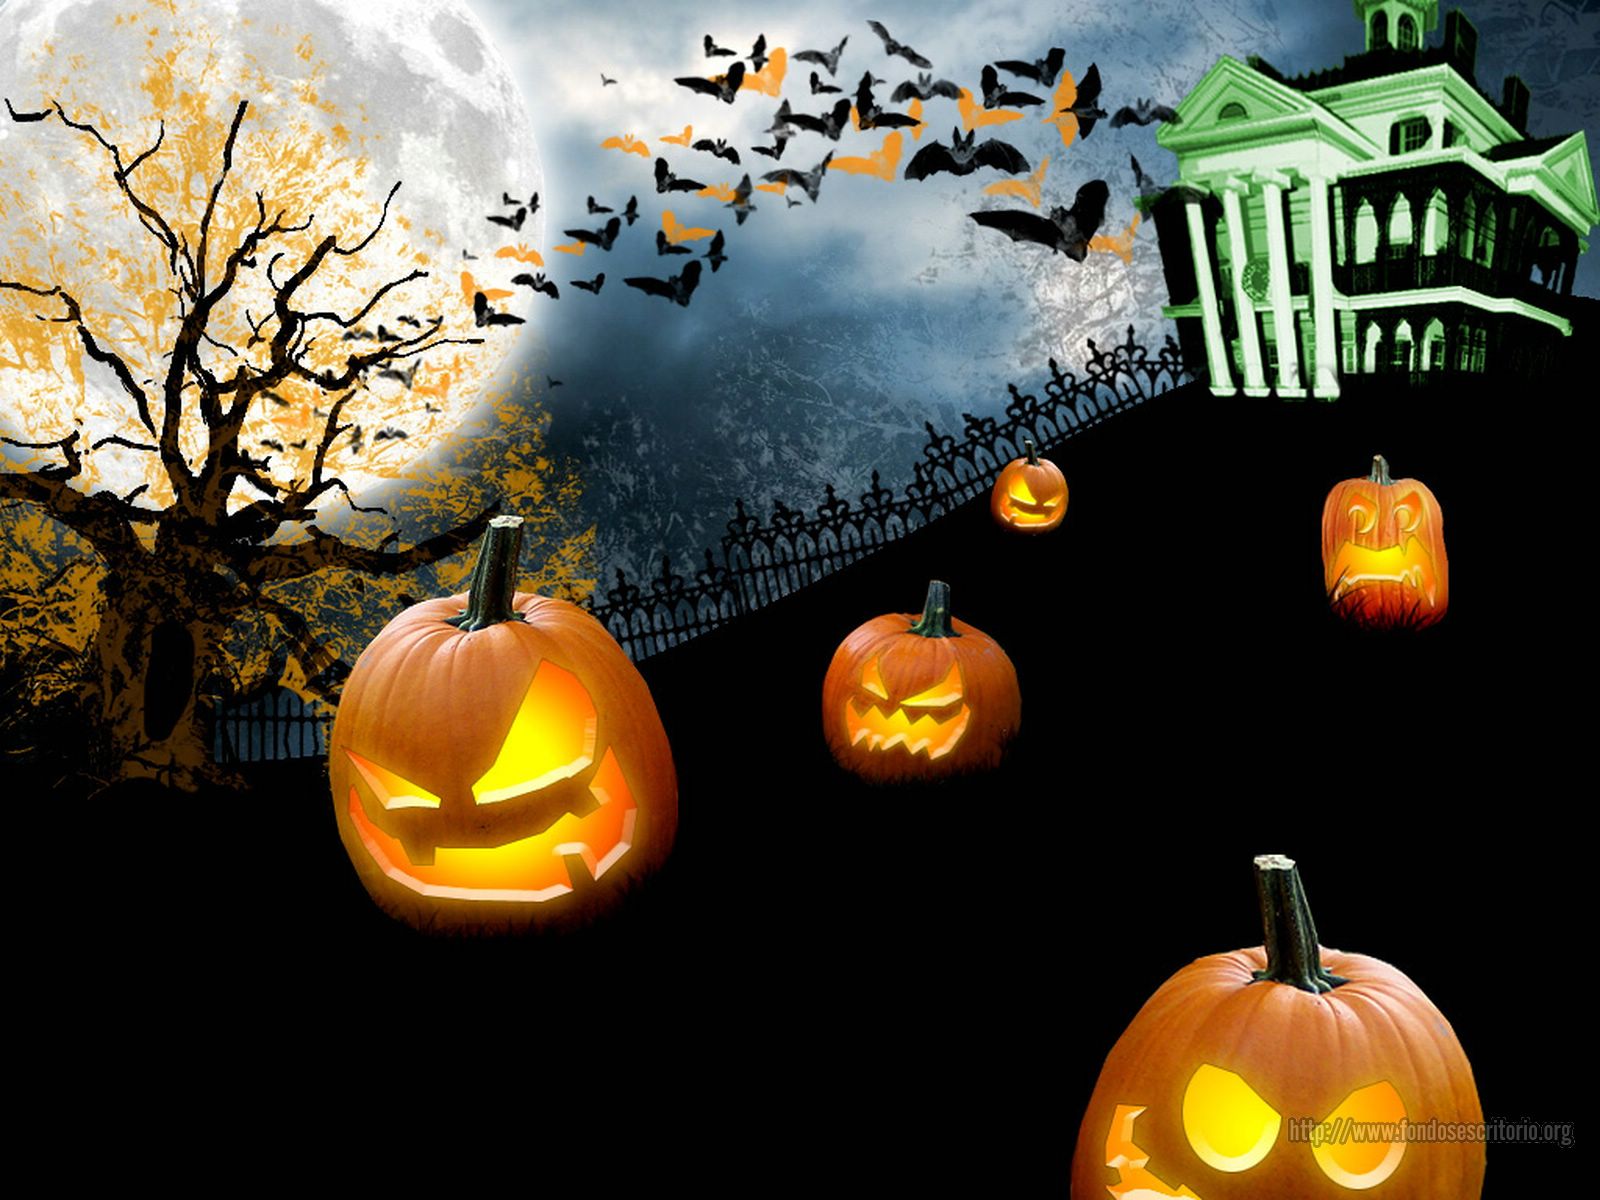 Wp-content/uploads/2012/10/Beautiful-Examples-of-Happy-Halloween-6.jpg.